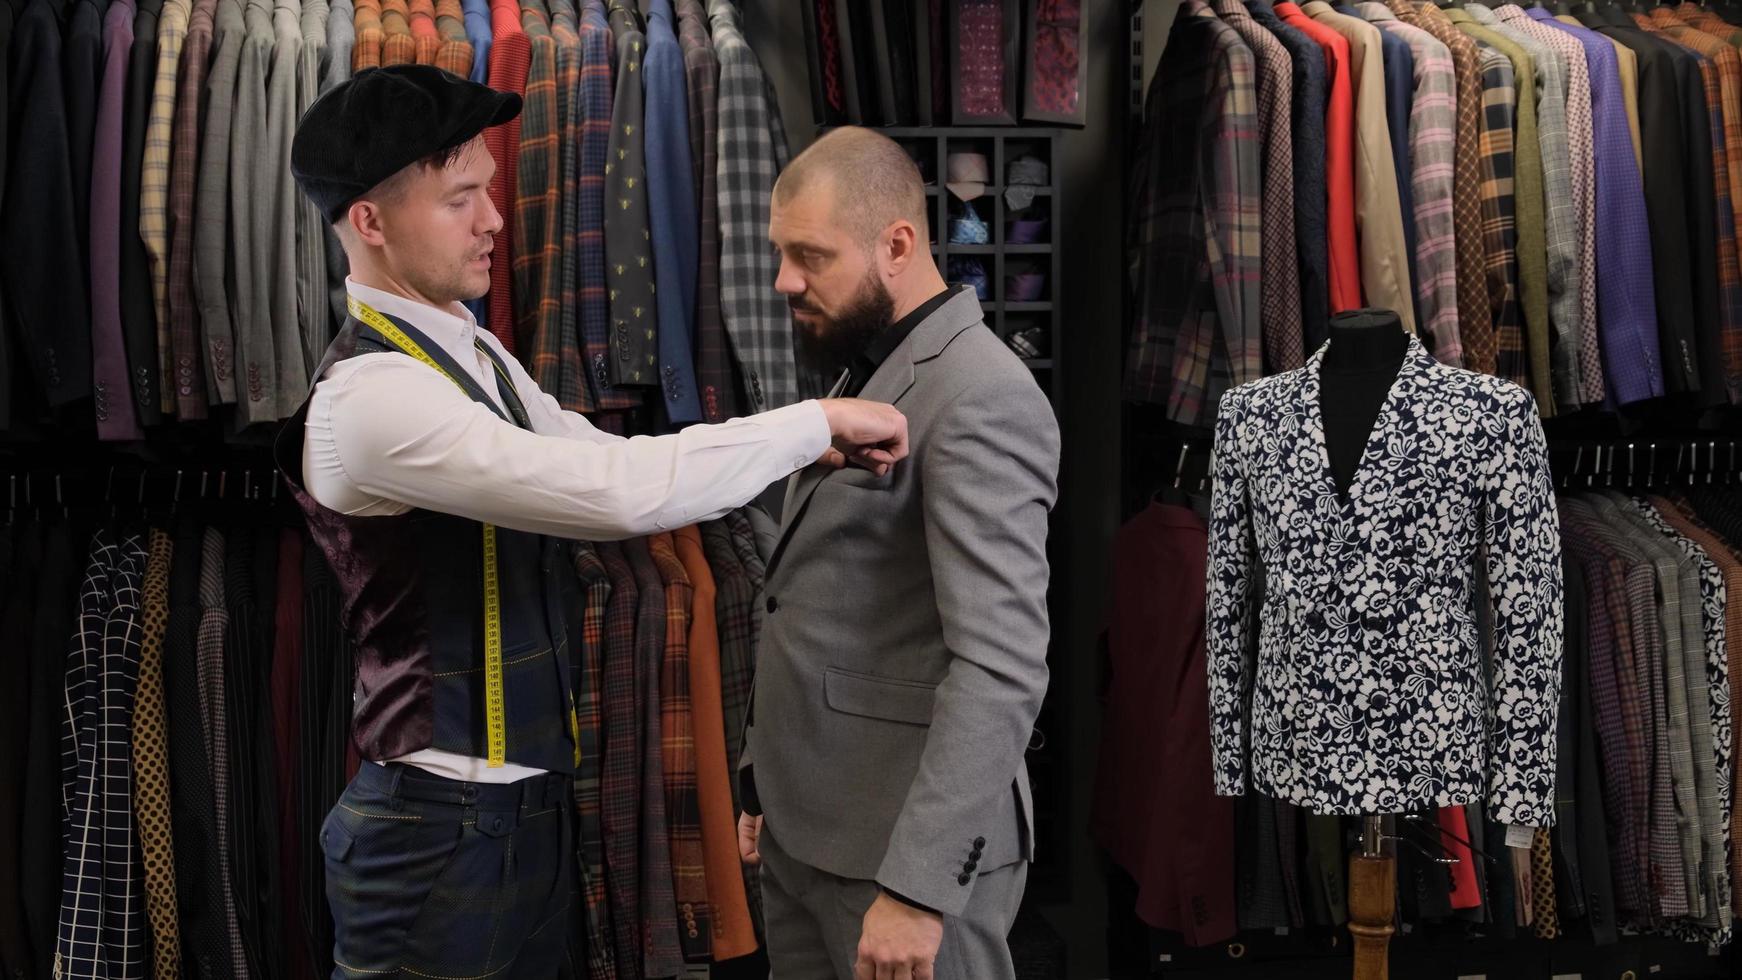 o estilista alfaiate medindo o terno com uma fita métrica no modelo masculino foto